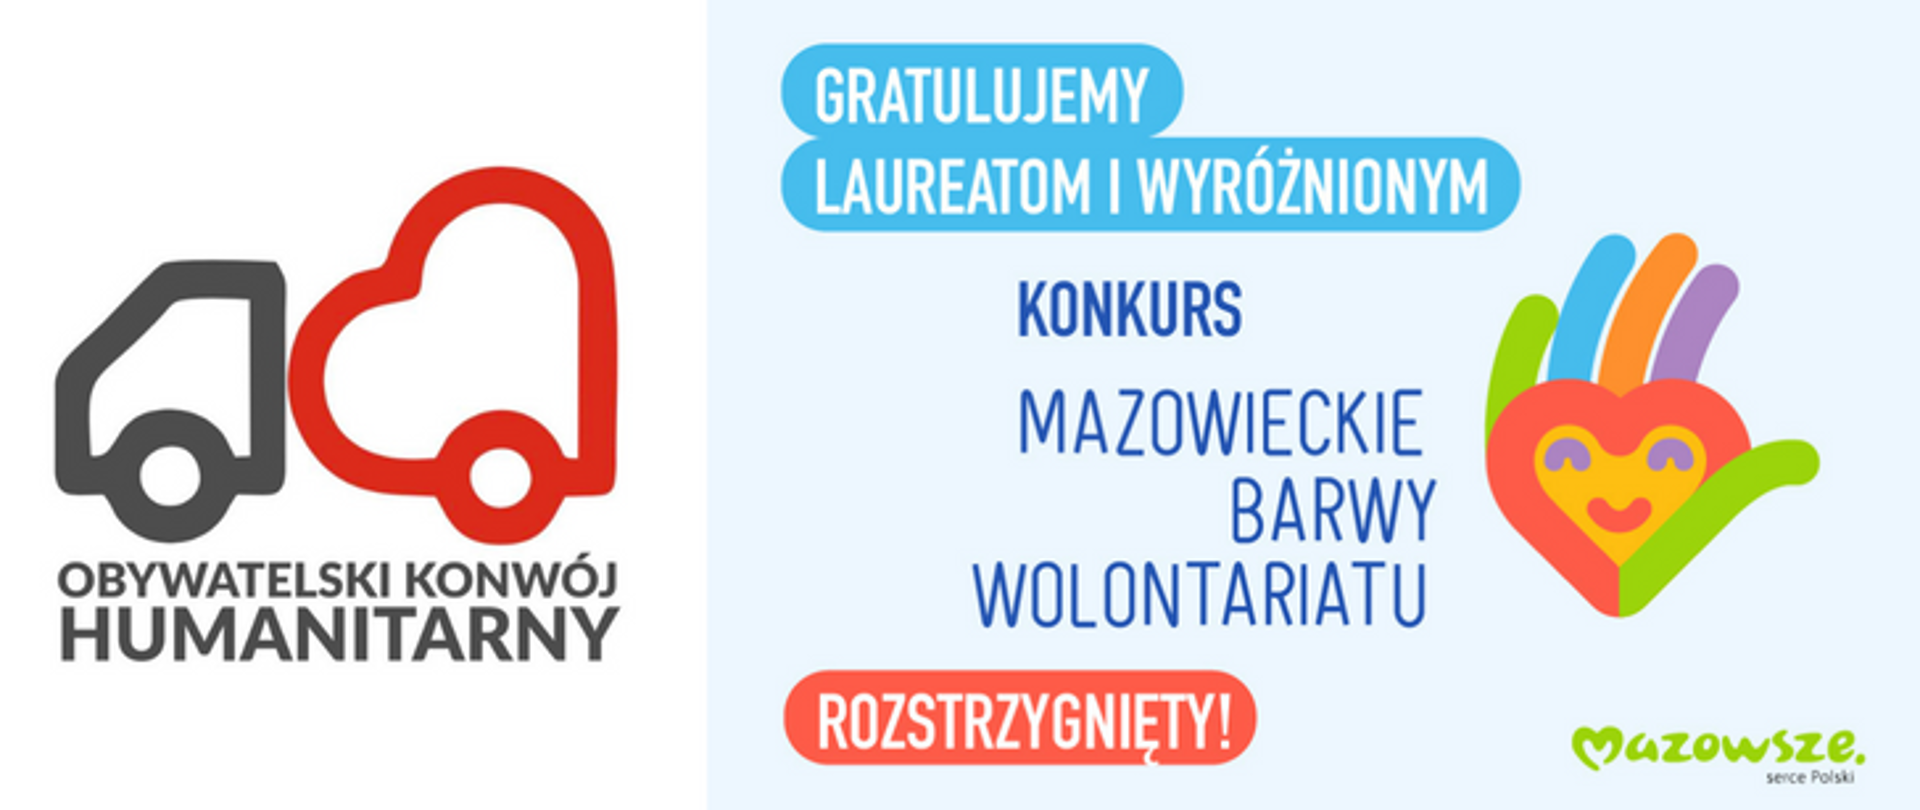 Grafika przedstawia logotyp organizacji Obywatelski Konwój Humanitarny po prawej, oraz po lewej grafikę i informację o rozstrzygnięciu konkursu "Mazowieckie Barwy Wolontariatu".